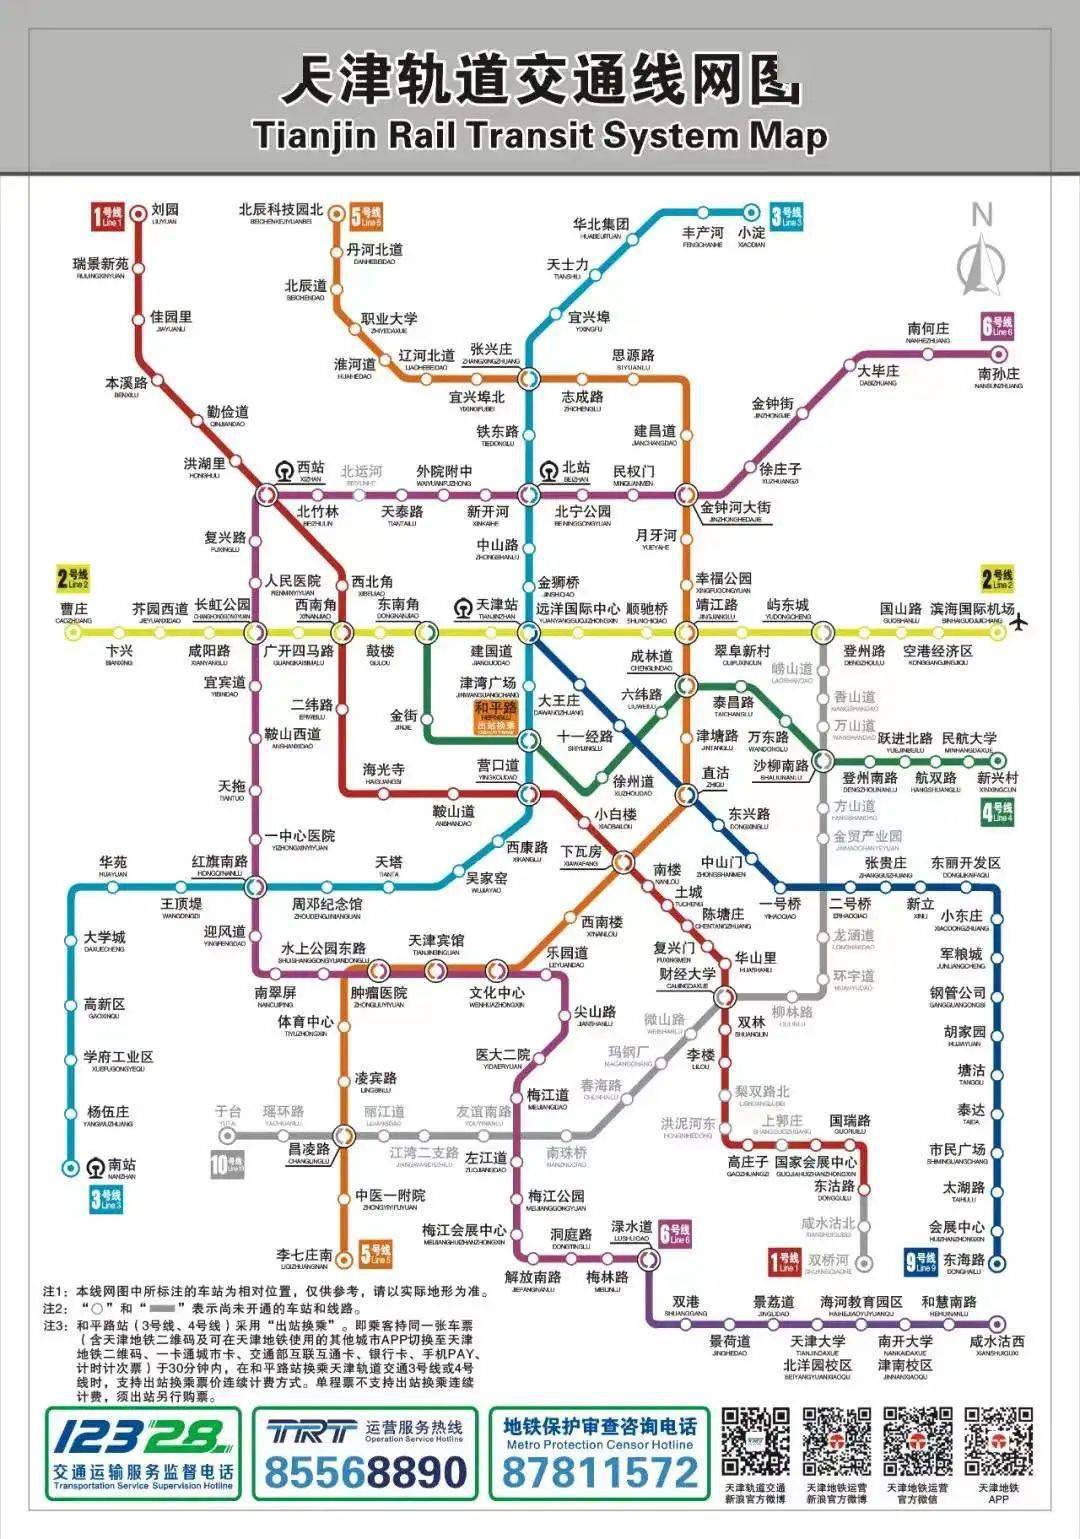 (图源:天津地铁运营)4运营时间6号线二期运营时间为6:00—23:01